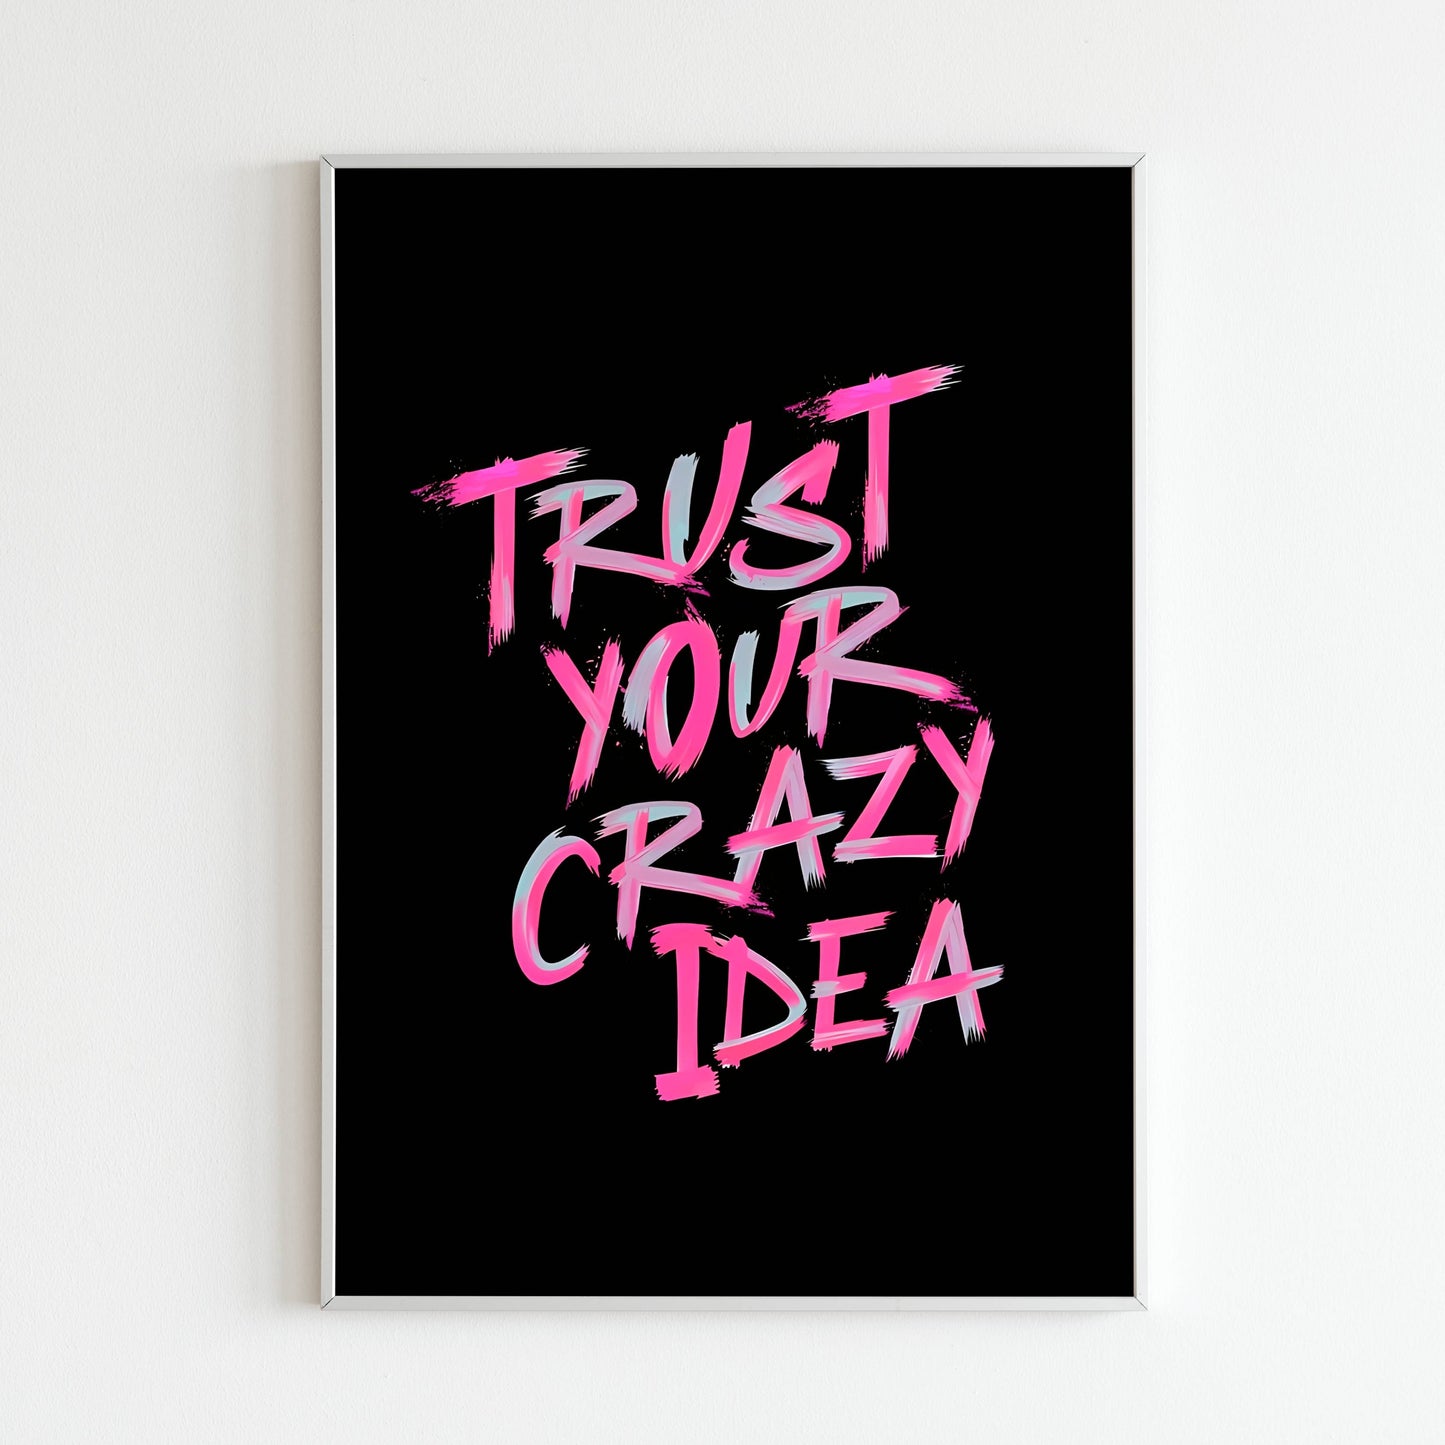 Trust your crazy idea